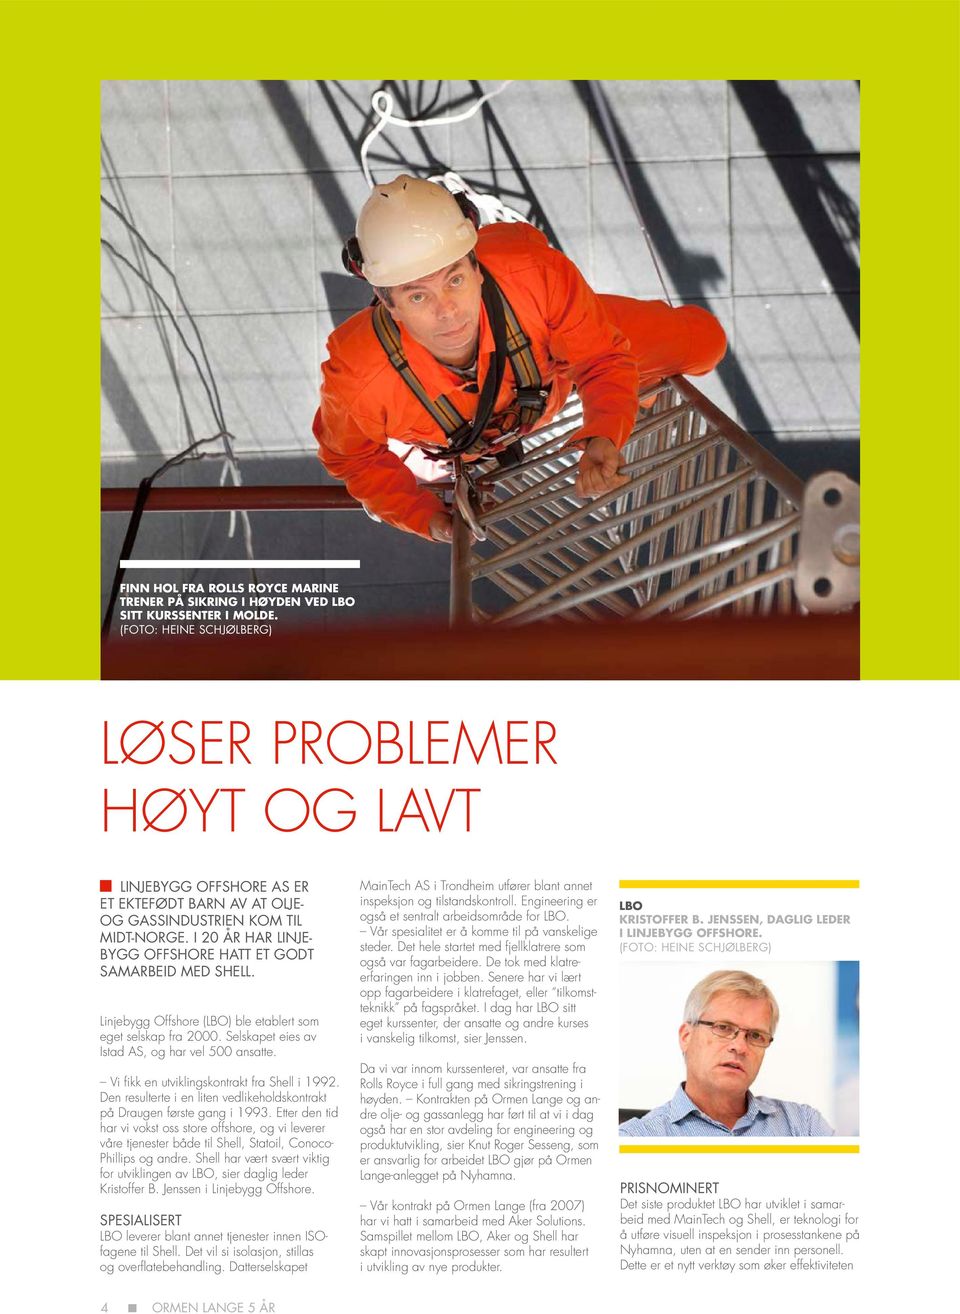 I 20 år har Linjebygg Offshore hatt et godt samarbeid med Shell. Linjebygg Offshore (LBO) ble etablert som eget selskap fra 2000. Selskapet eies av Istad AS, og har vel 500 ansatte.